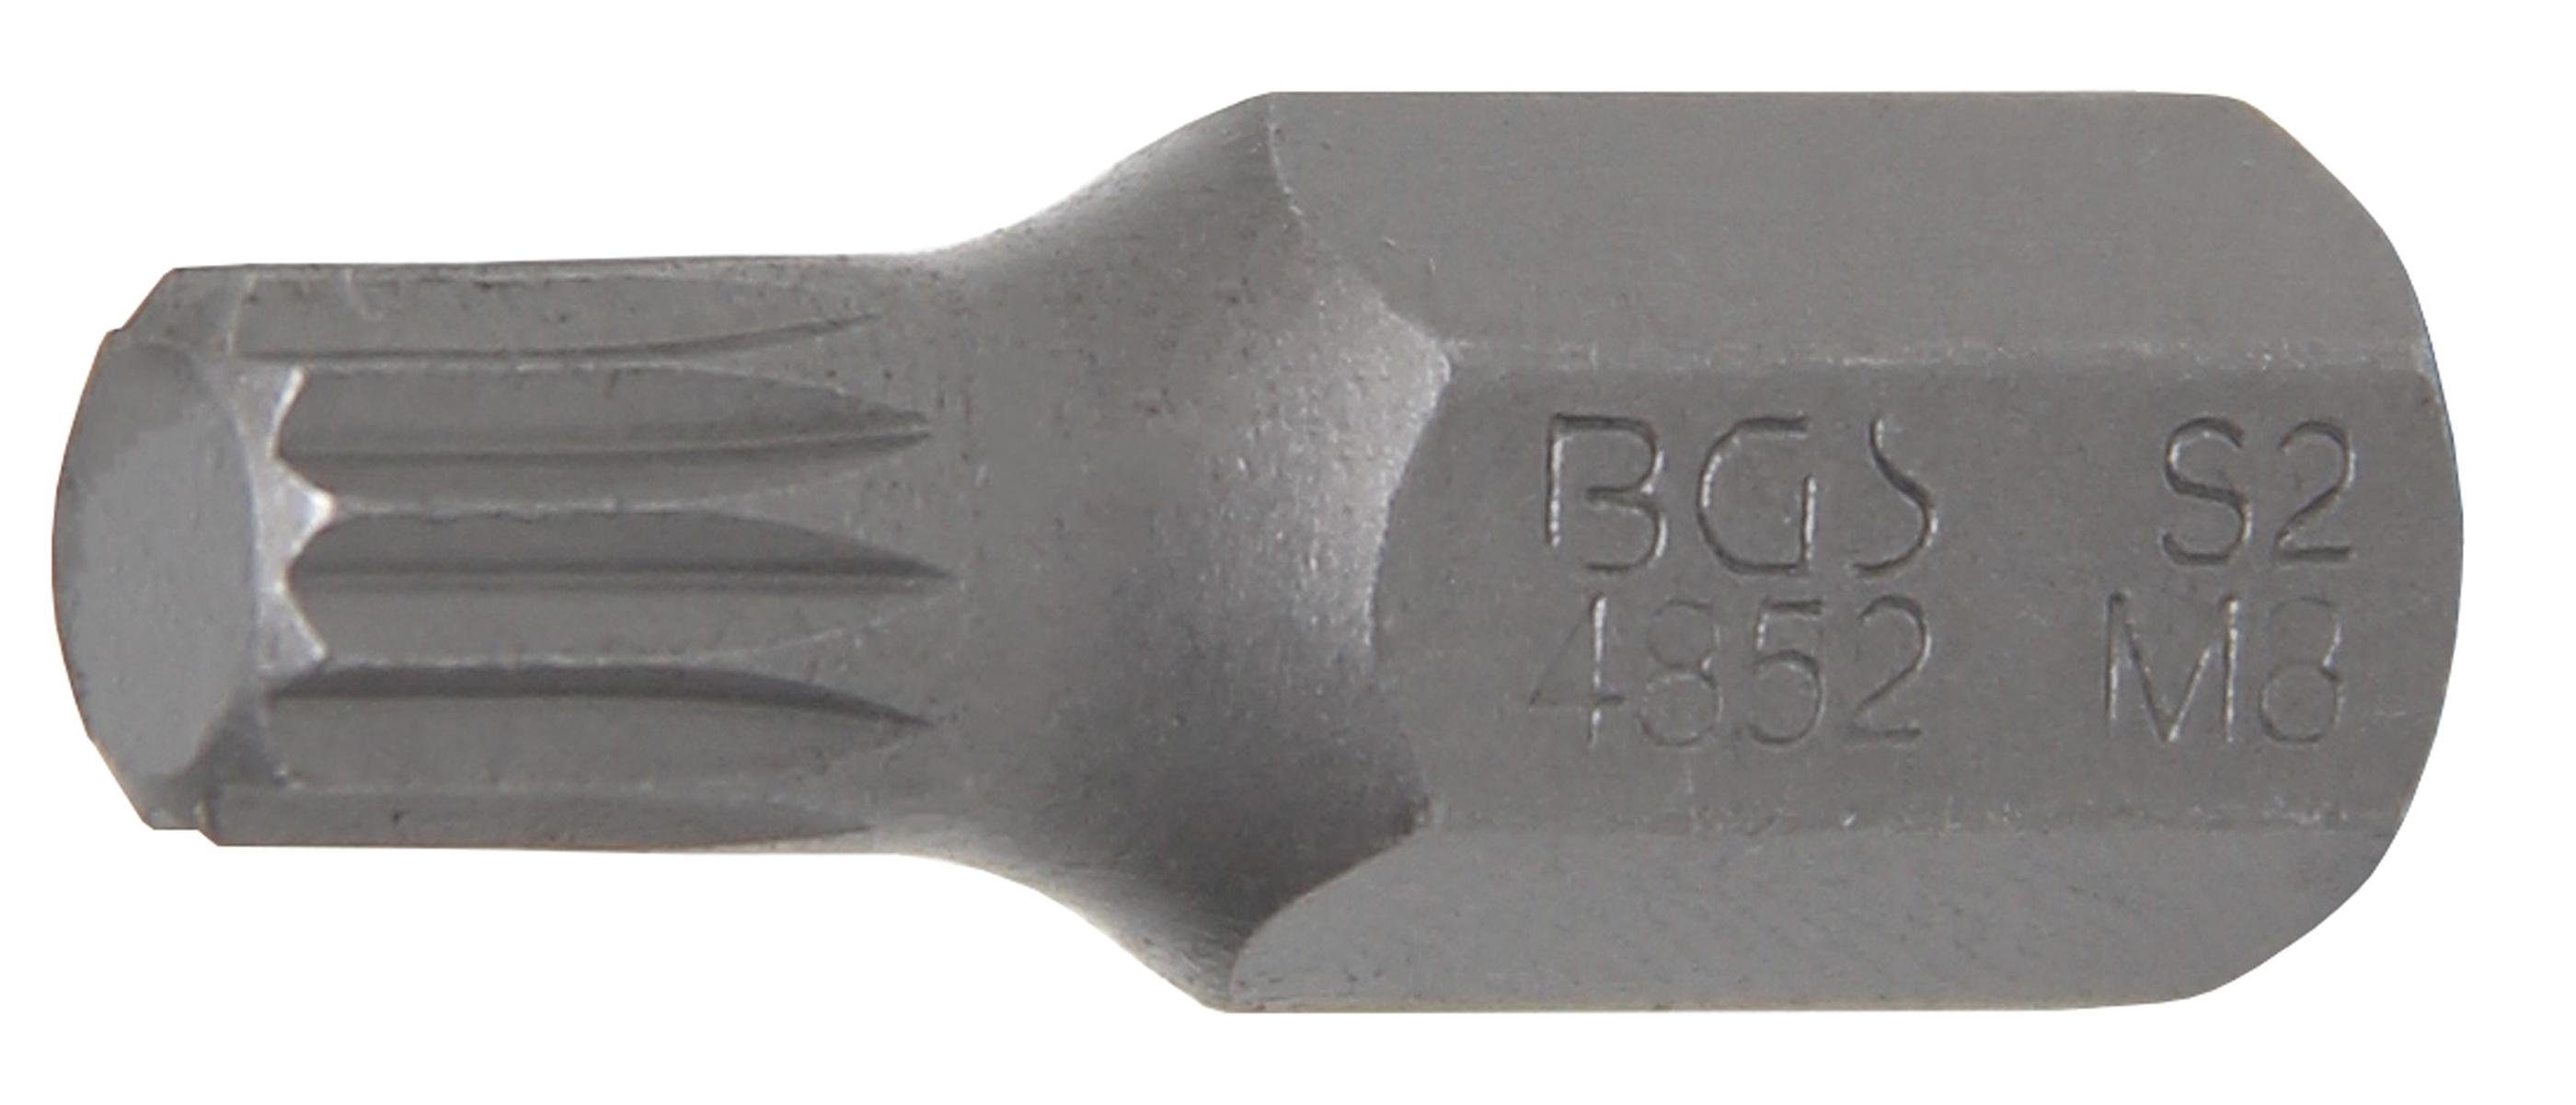 BGS technic Bit-Schraubendreher Bit, Antrieb Außensechskant 10 mm (3/8), Innenvielzahn (für XZN) M8